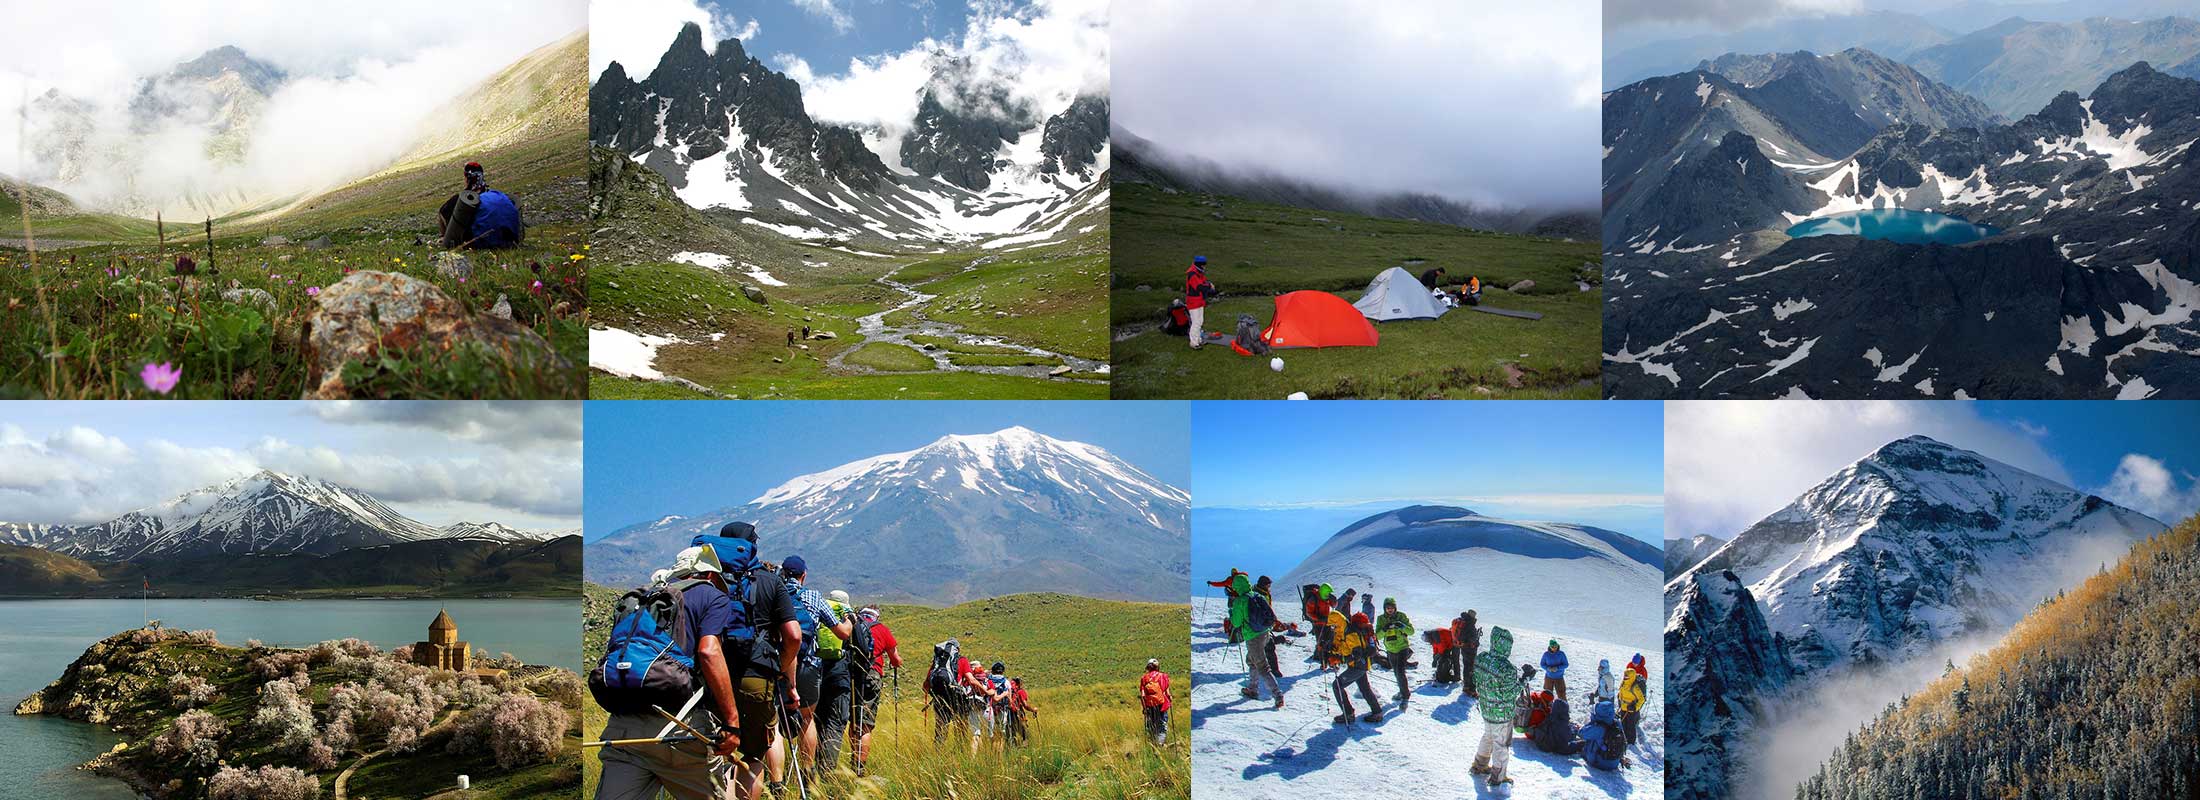 mountaineering-15-DAYS-MOUNT-KACKAR-ARARAT-EXPEDITION-TREKKING